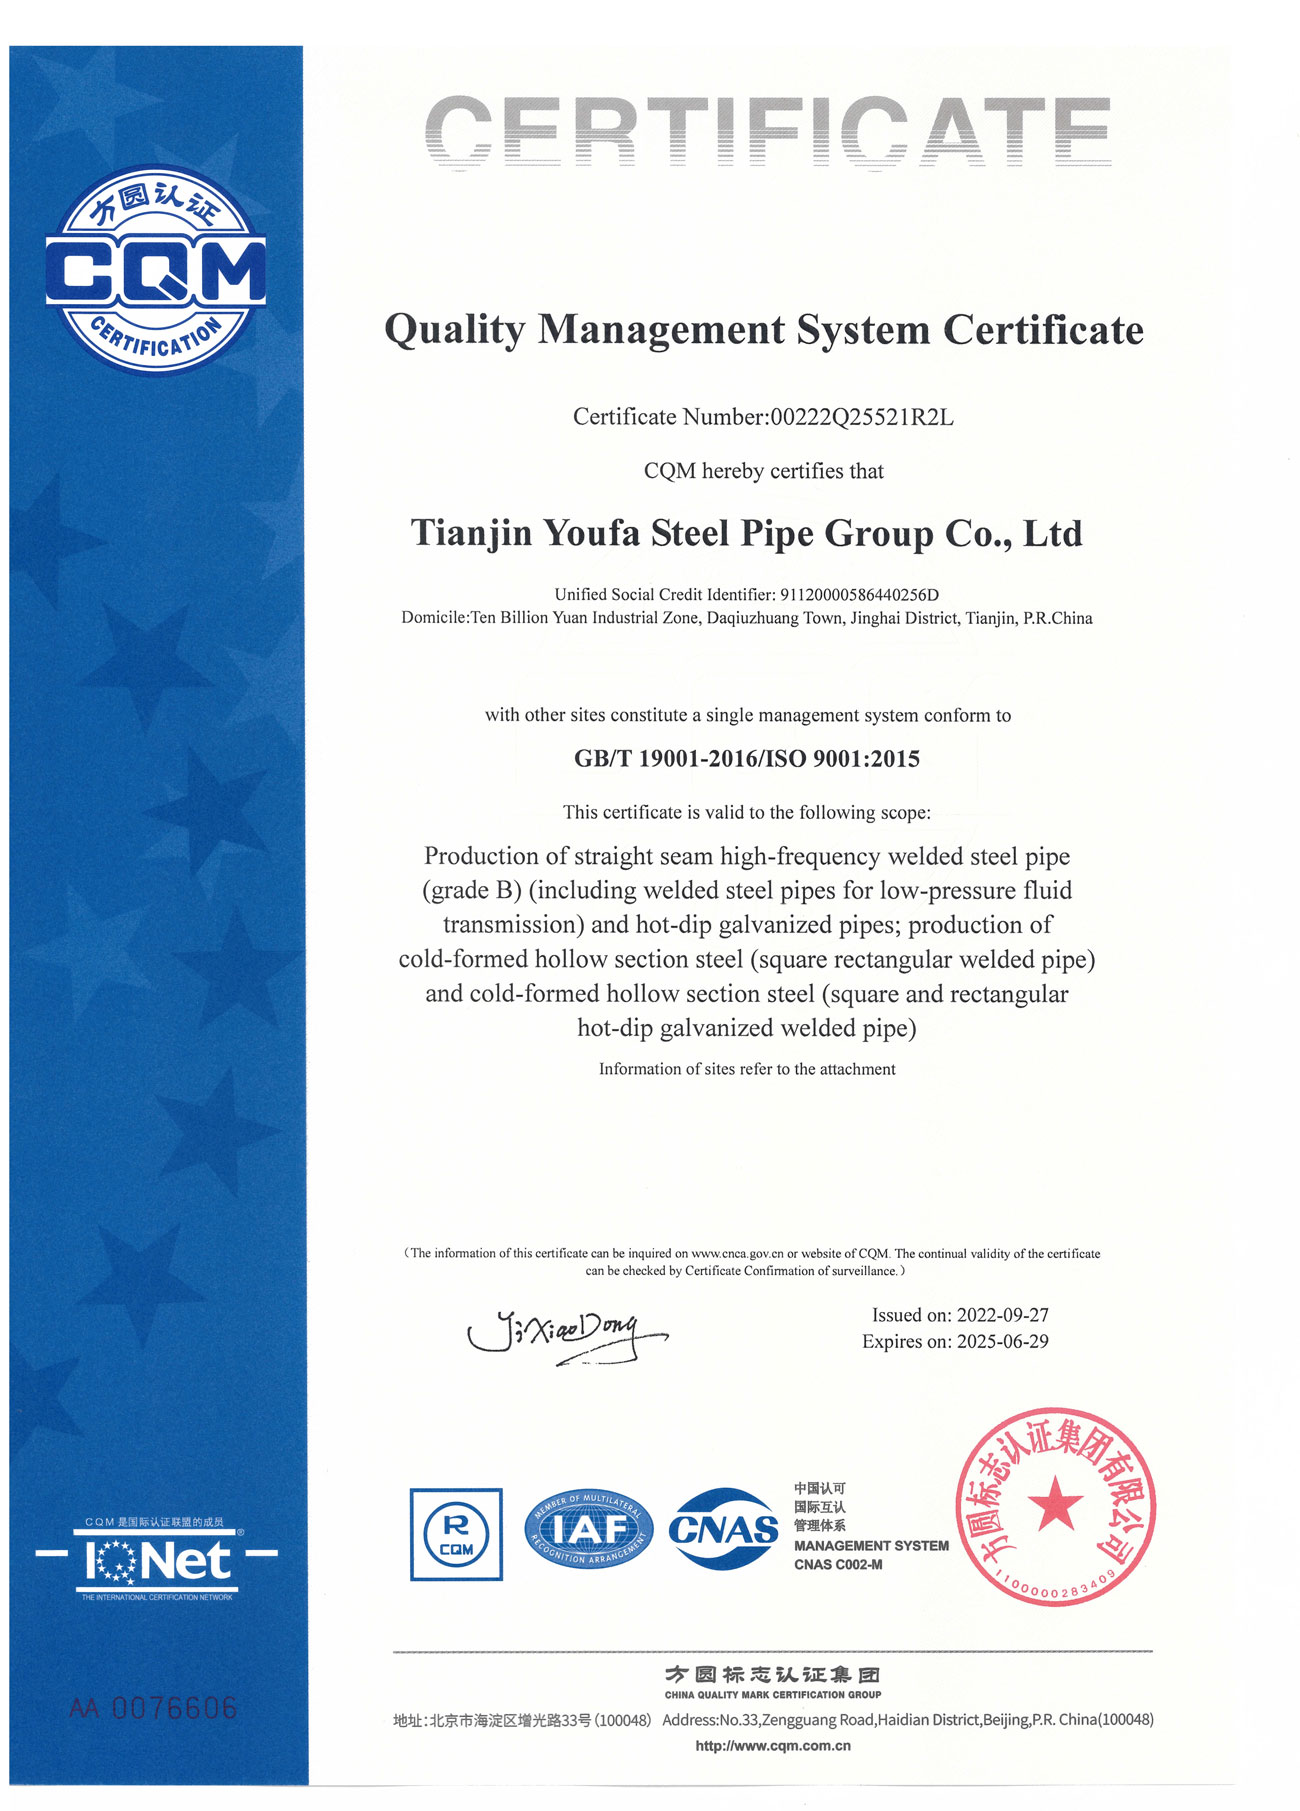 ISO9001-GBT190012